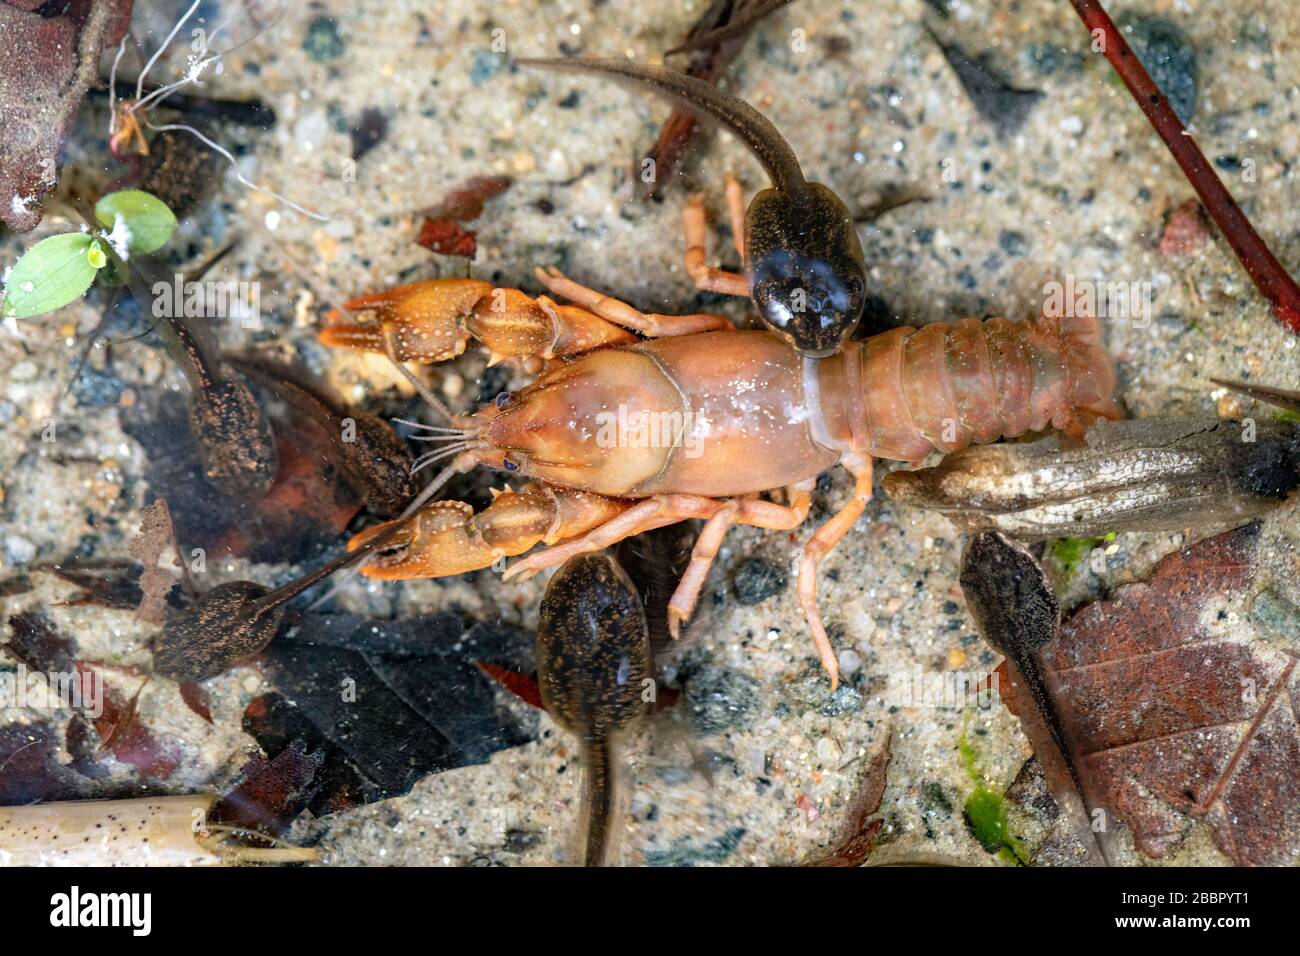 Tadel, die sich von einem toten Flusskrebsen im flachen Wasserpool ernähren - Pisgah National Forest, Brevard, North Carolina, USA Stockfoto